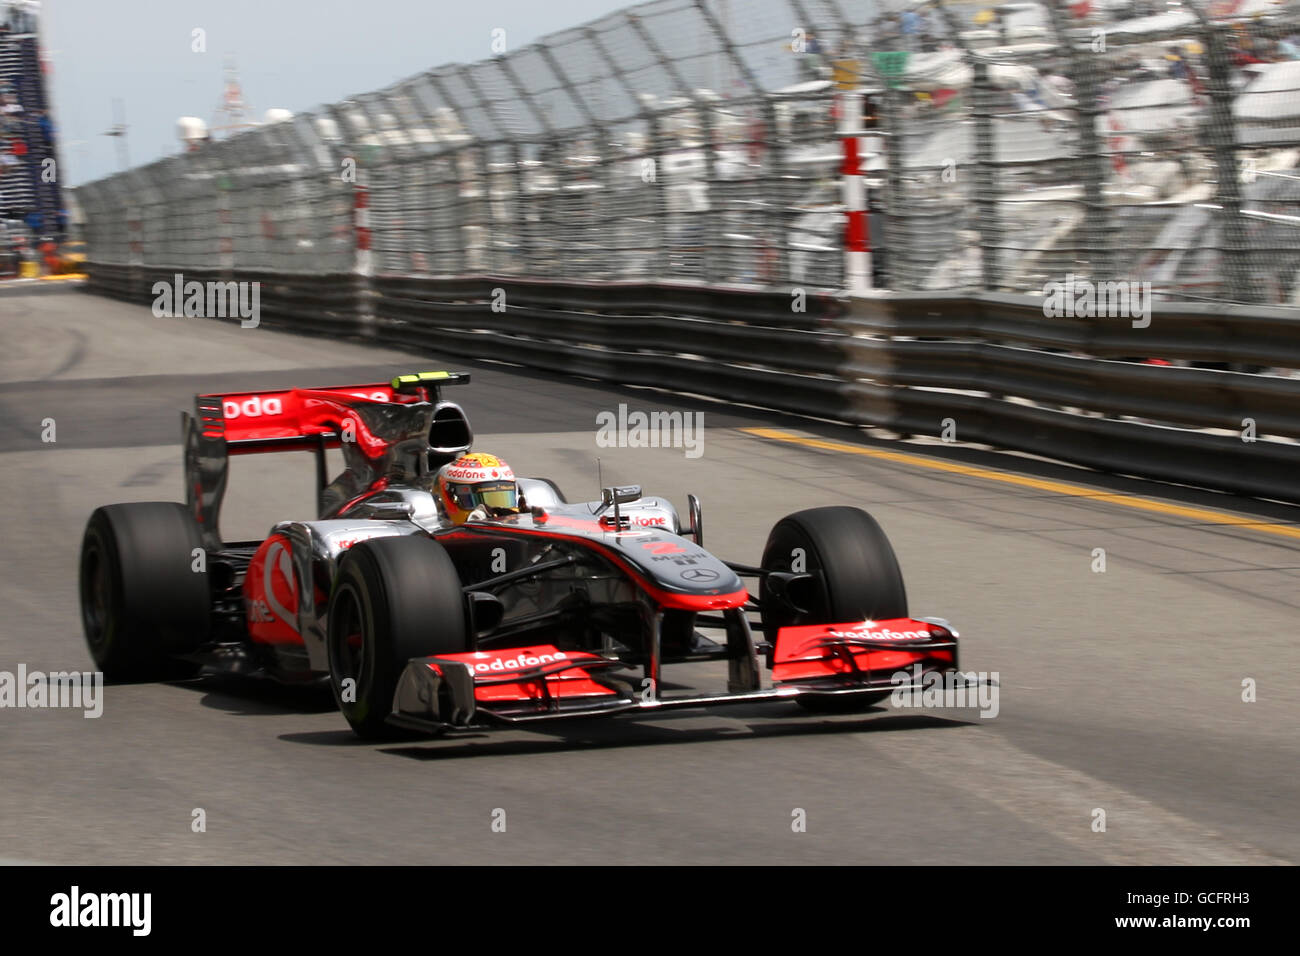 Formula uno Motor Racing - Gran Premio di Monaco - Practice e Qualifiche - circuito di Monaco. Lewis Hamilton (GBR), McLaren. Foto Stock